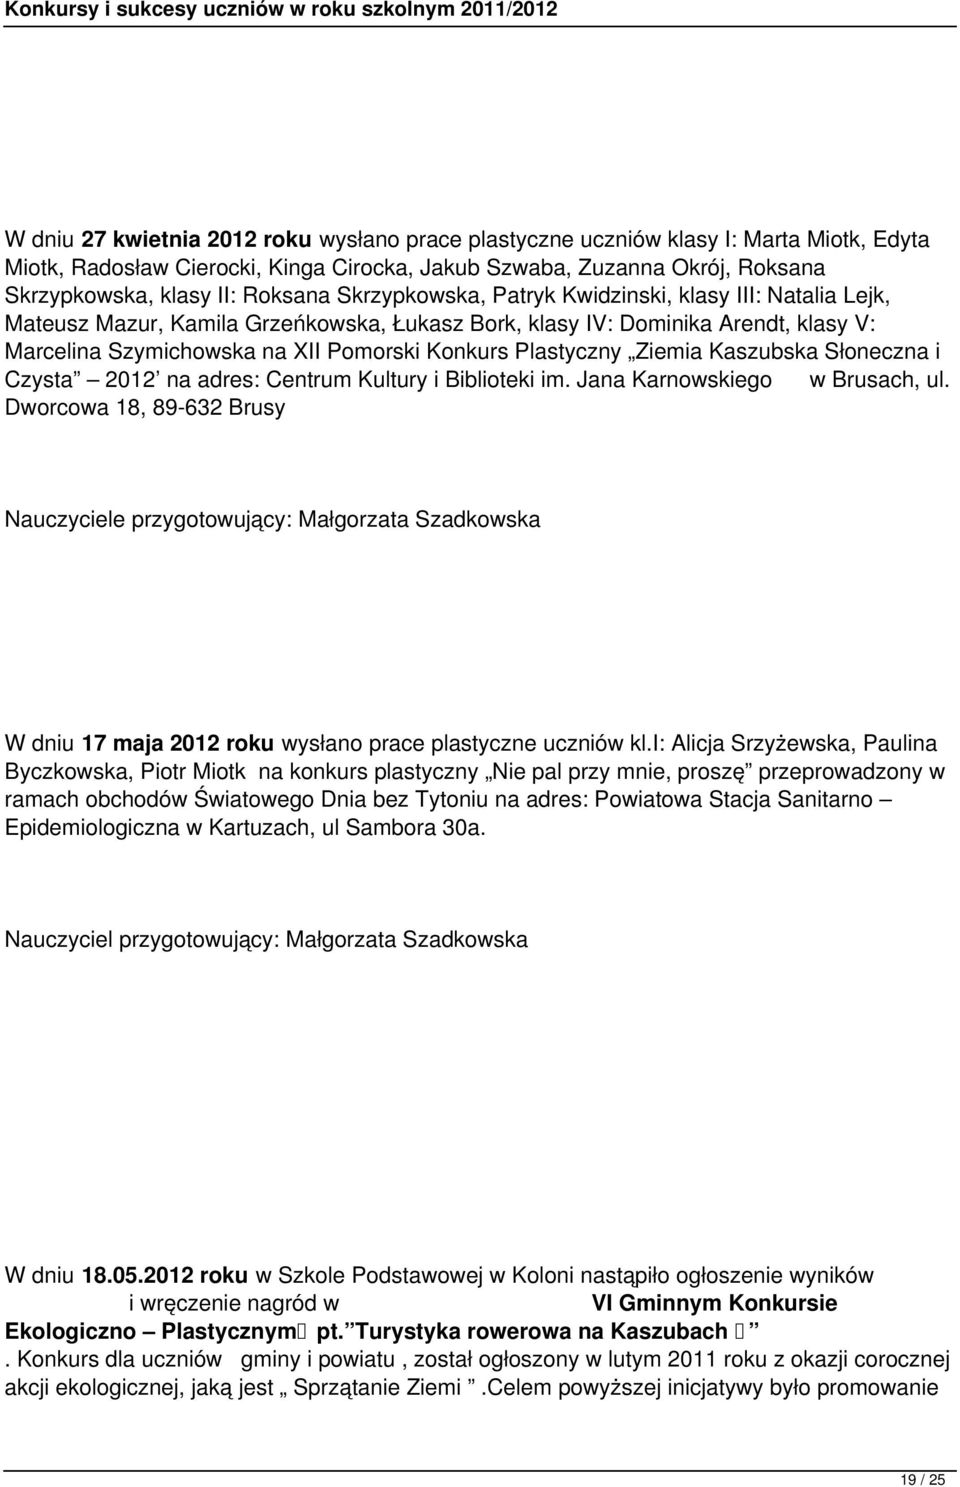 Ziemia Kaszubska Słoneczna i Czysta 2012 na adres: Centrum Kultury i Biblioteki im. Jana Karnowskiego w Brusach, ul.